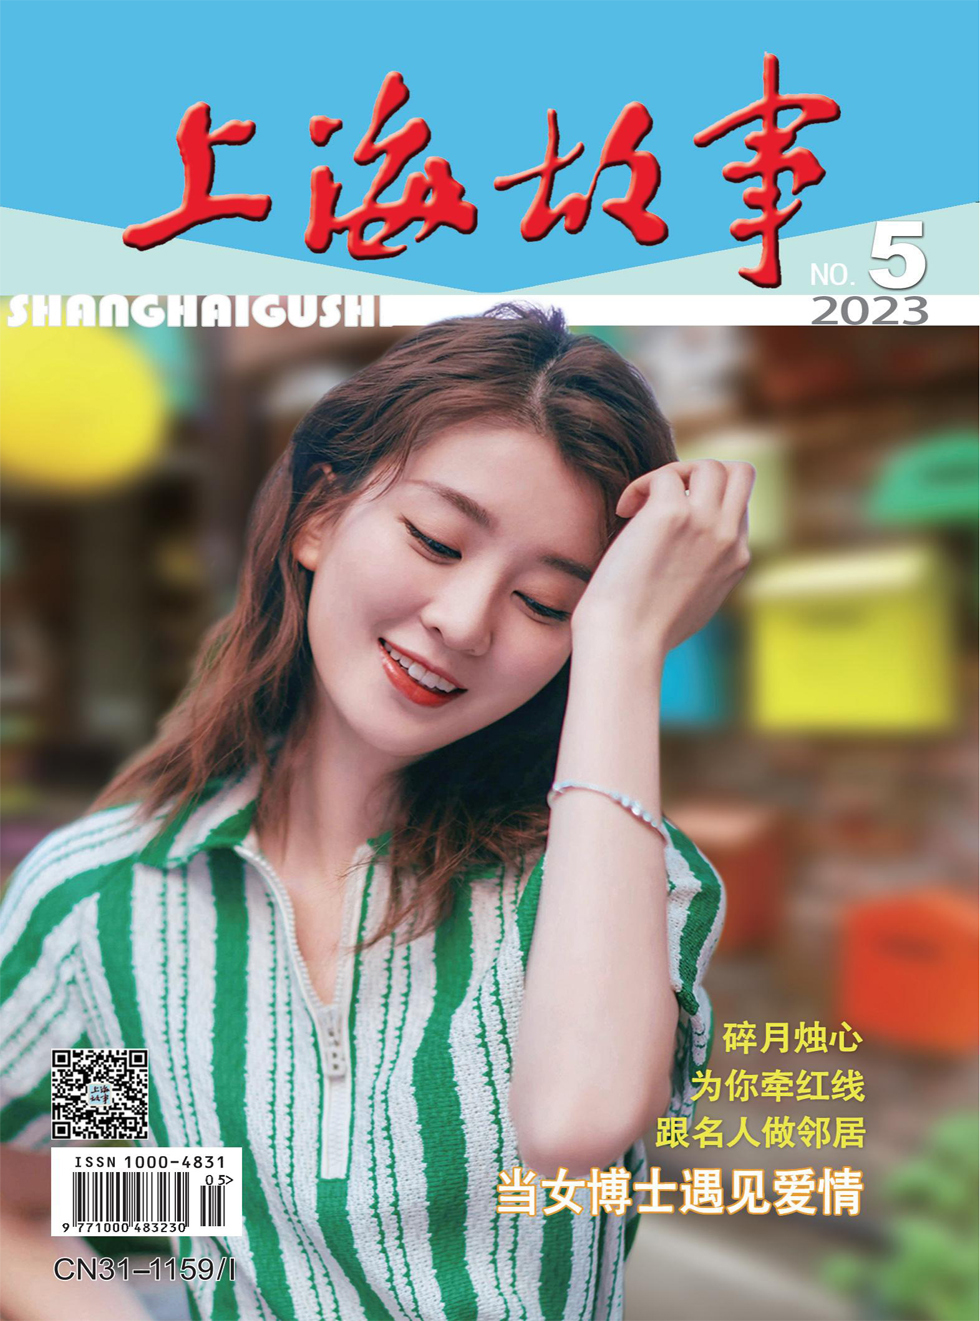 上海故事杂志封面